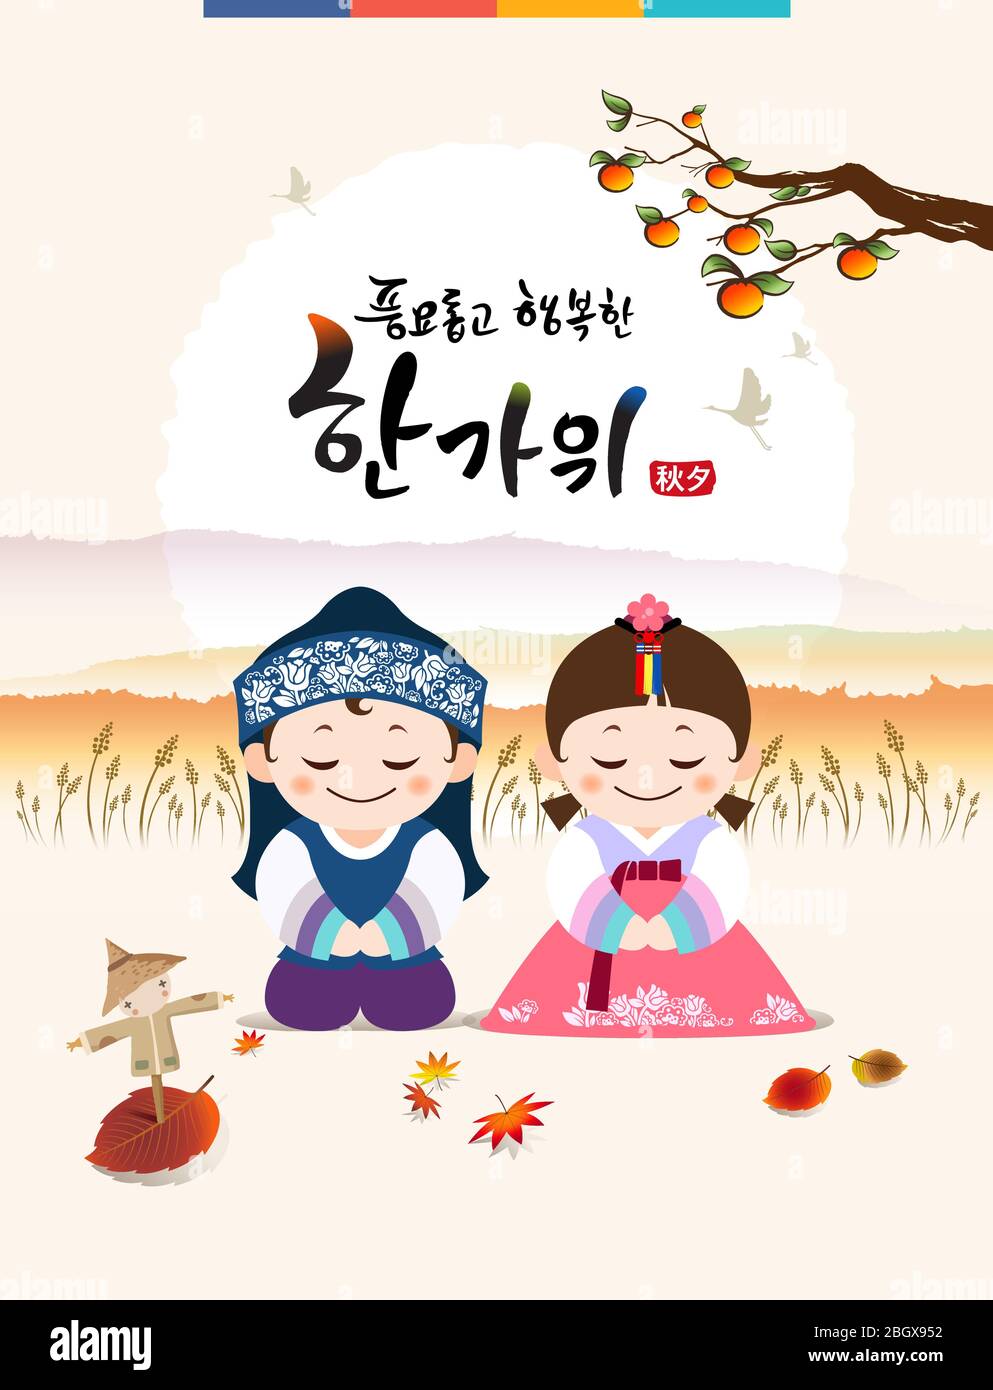 Récolte riche et heureux Chuseok, Hangawi, traduction coréenne. Le personnage traditionnel coréen des enfants et la pleine lune. Illustration de Vecteur